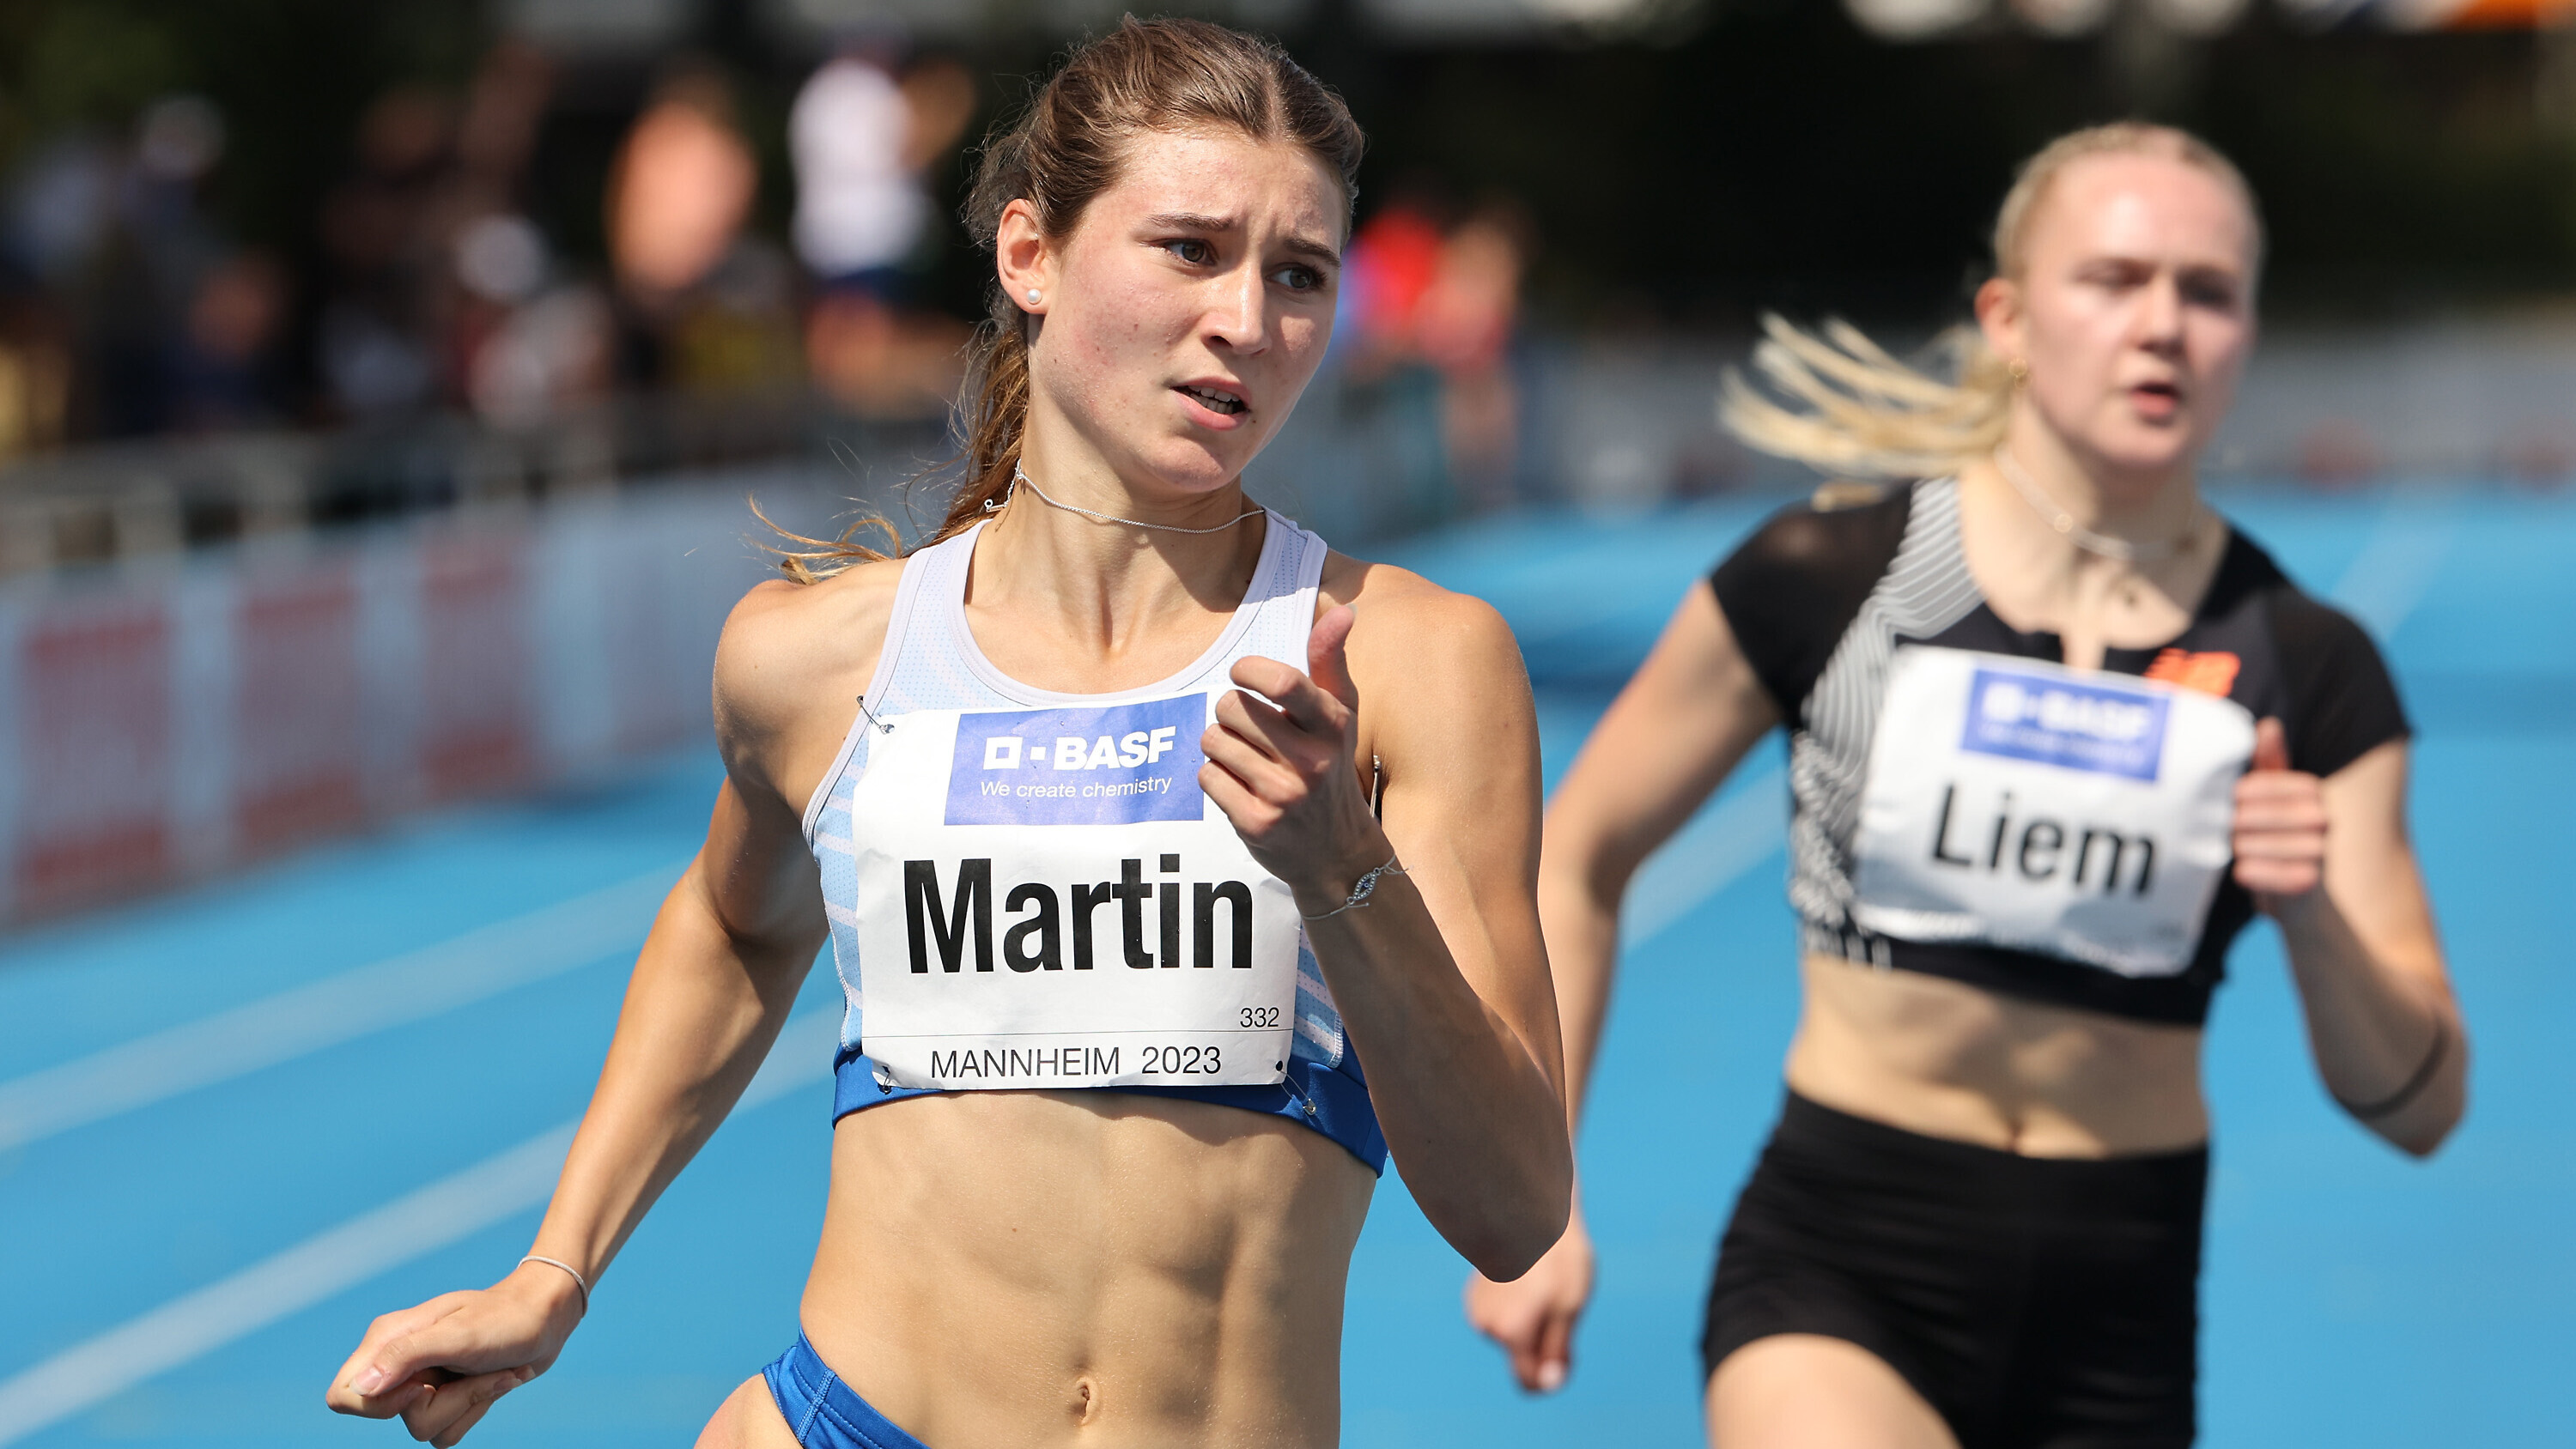 Bei der Junioren-Gala in Mannheim im vergangenen Sommer siegte Johanna Martin in 53,54 Sekunden.